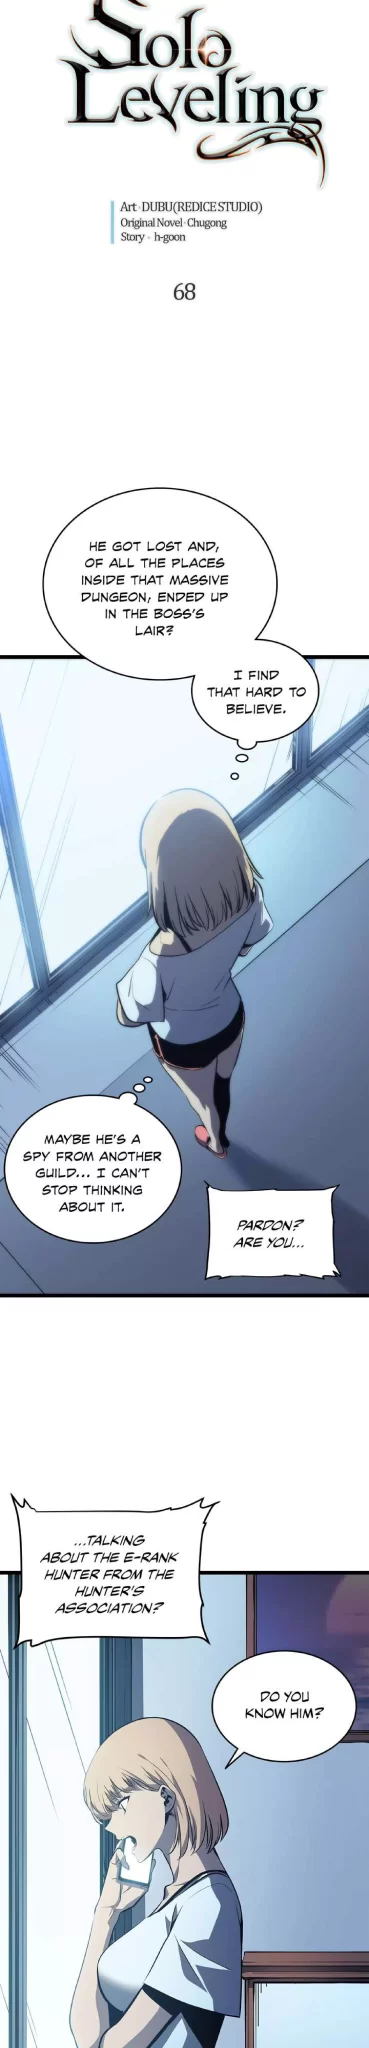 Solo Leveling Manga Manga Chapter - 68 - image 2